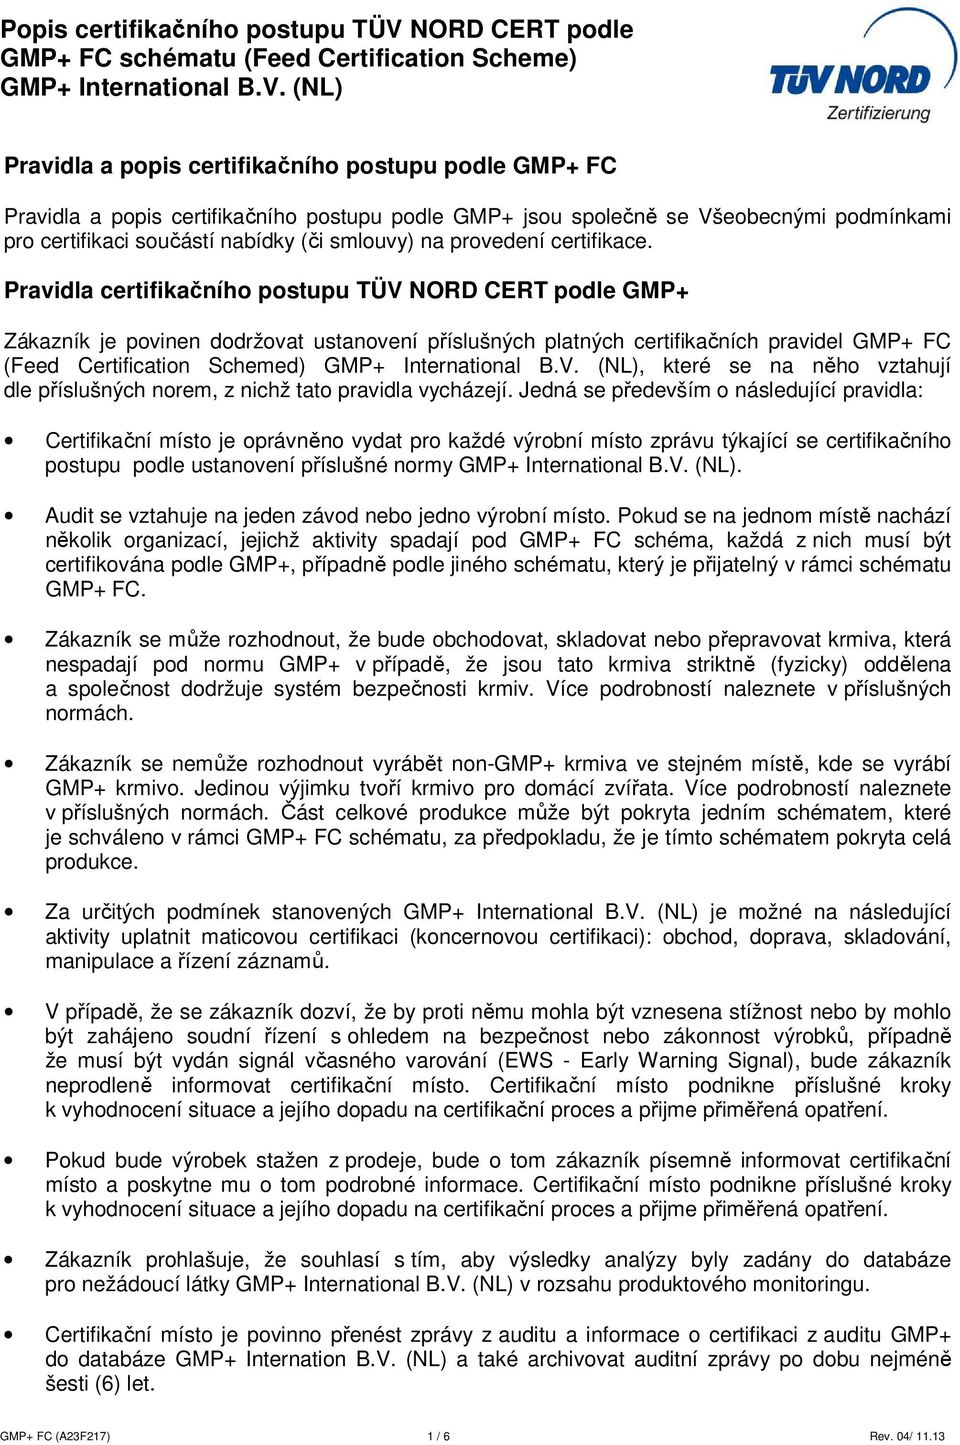 Pravidla certifikačního postupu TÜV NORD CERT podle GMP+ Zákazník je povinen dodržovat ustanovení příslušných platných certifikačních pravidel GMP+ FC (Feed Certification Schemed), které se na něho